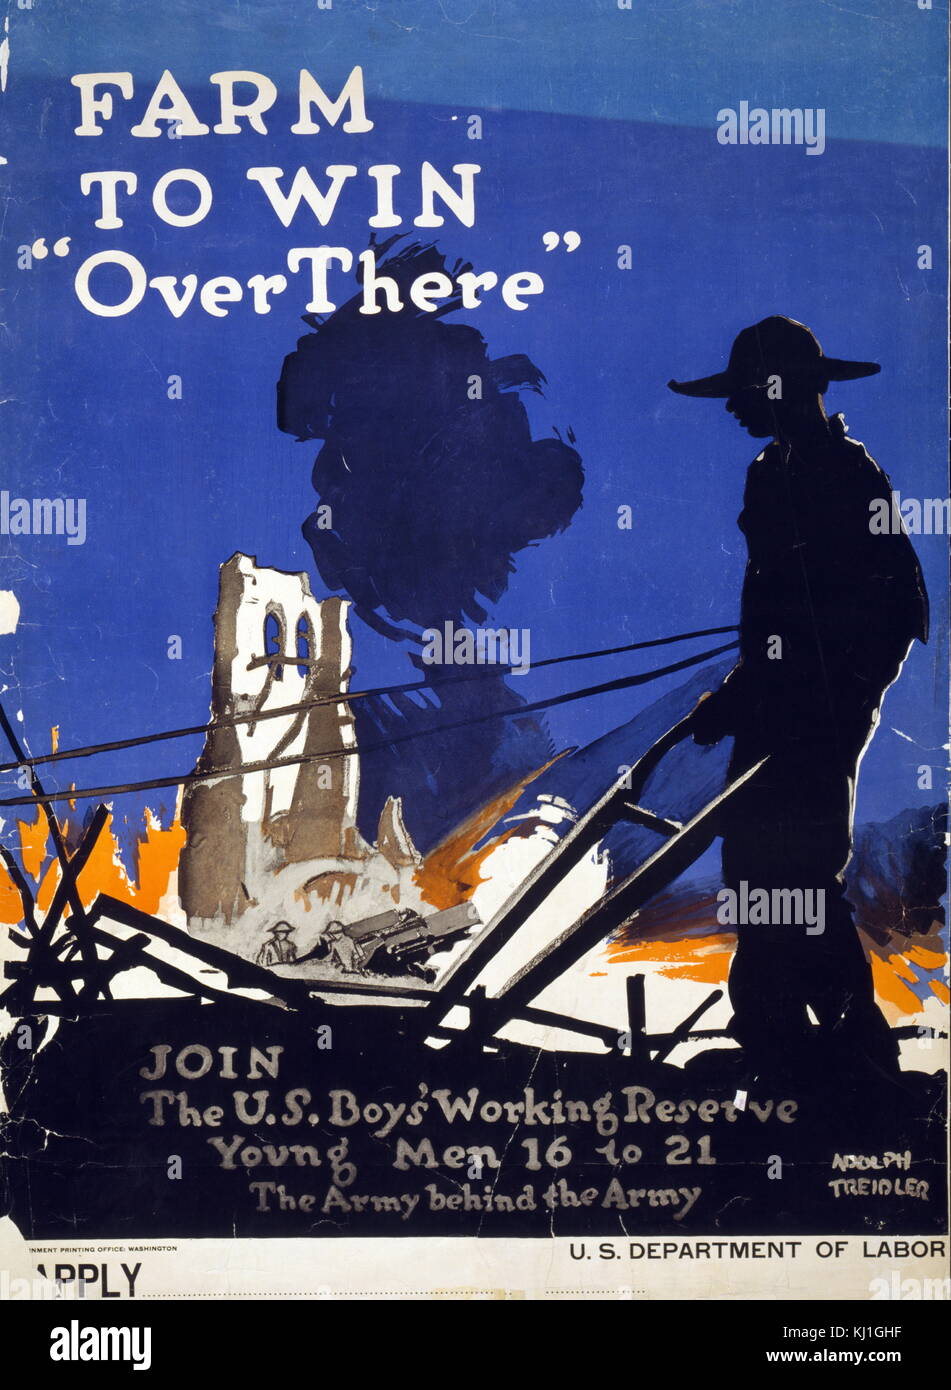 Propaganda Poster' Farm über um zu gewinnen - Beteiligen Sie sich an der US-Boys Woking finden junge Männer von 16 bis 21 'US Army, Erster Weltkrieg 1917 Stockfoto